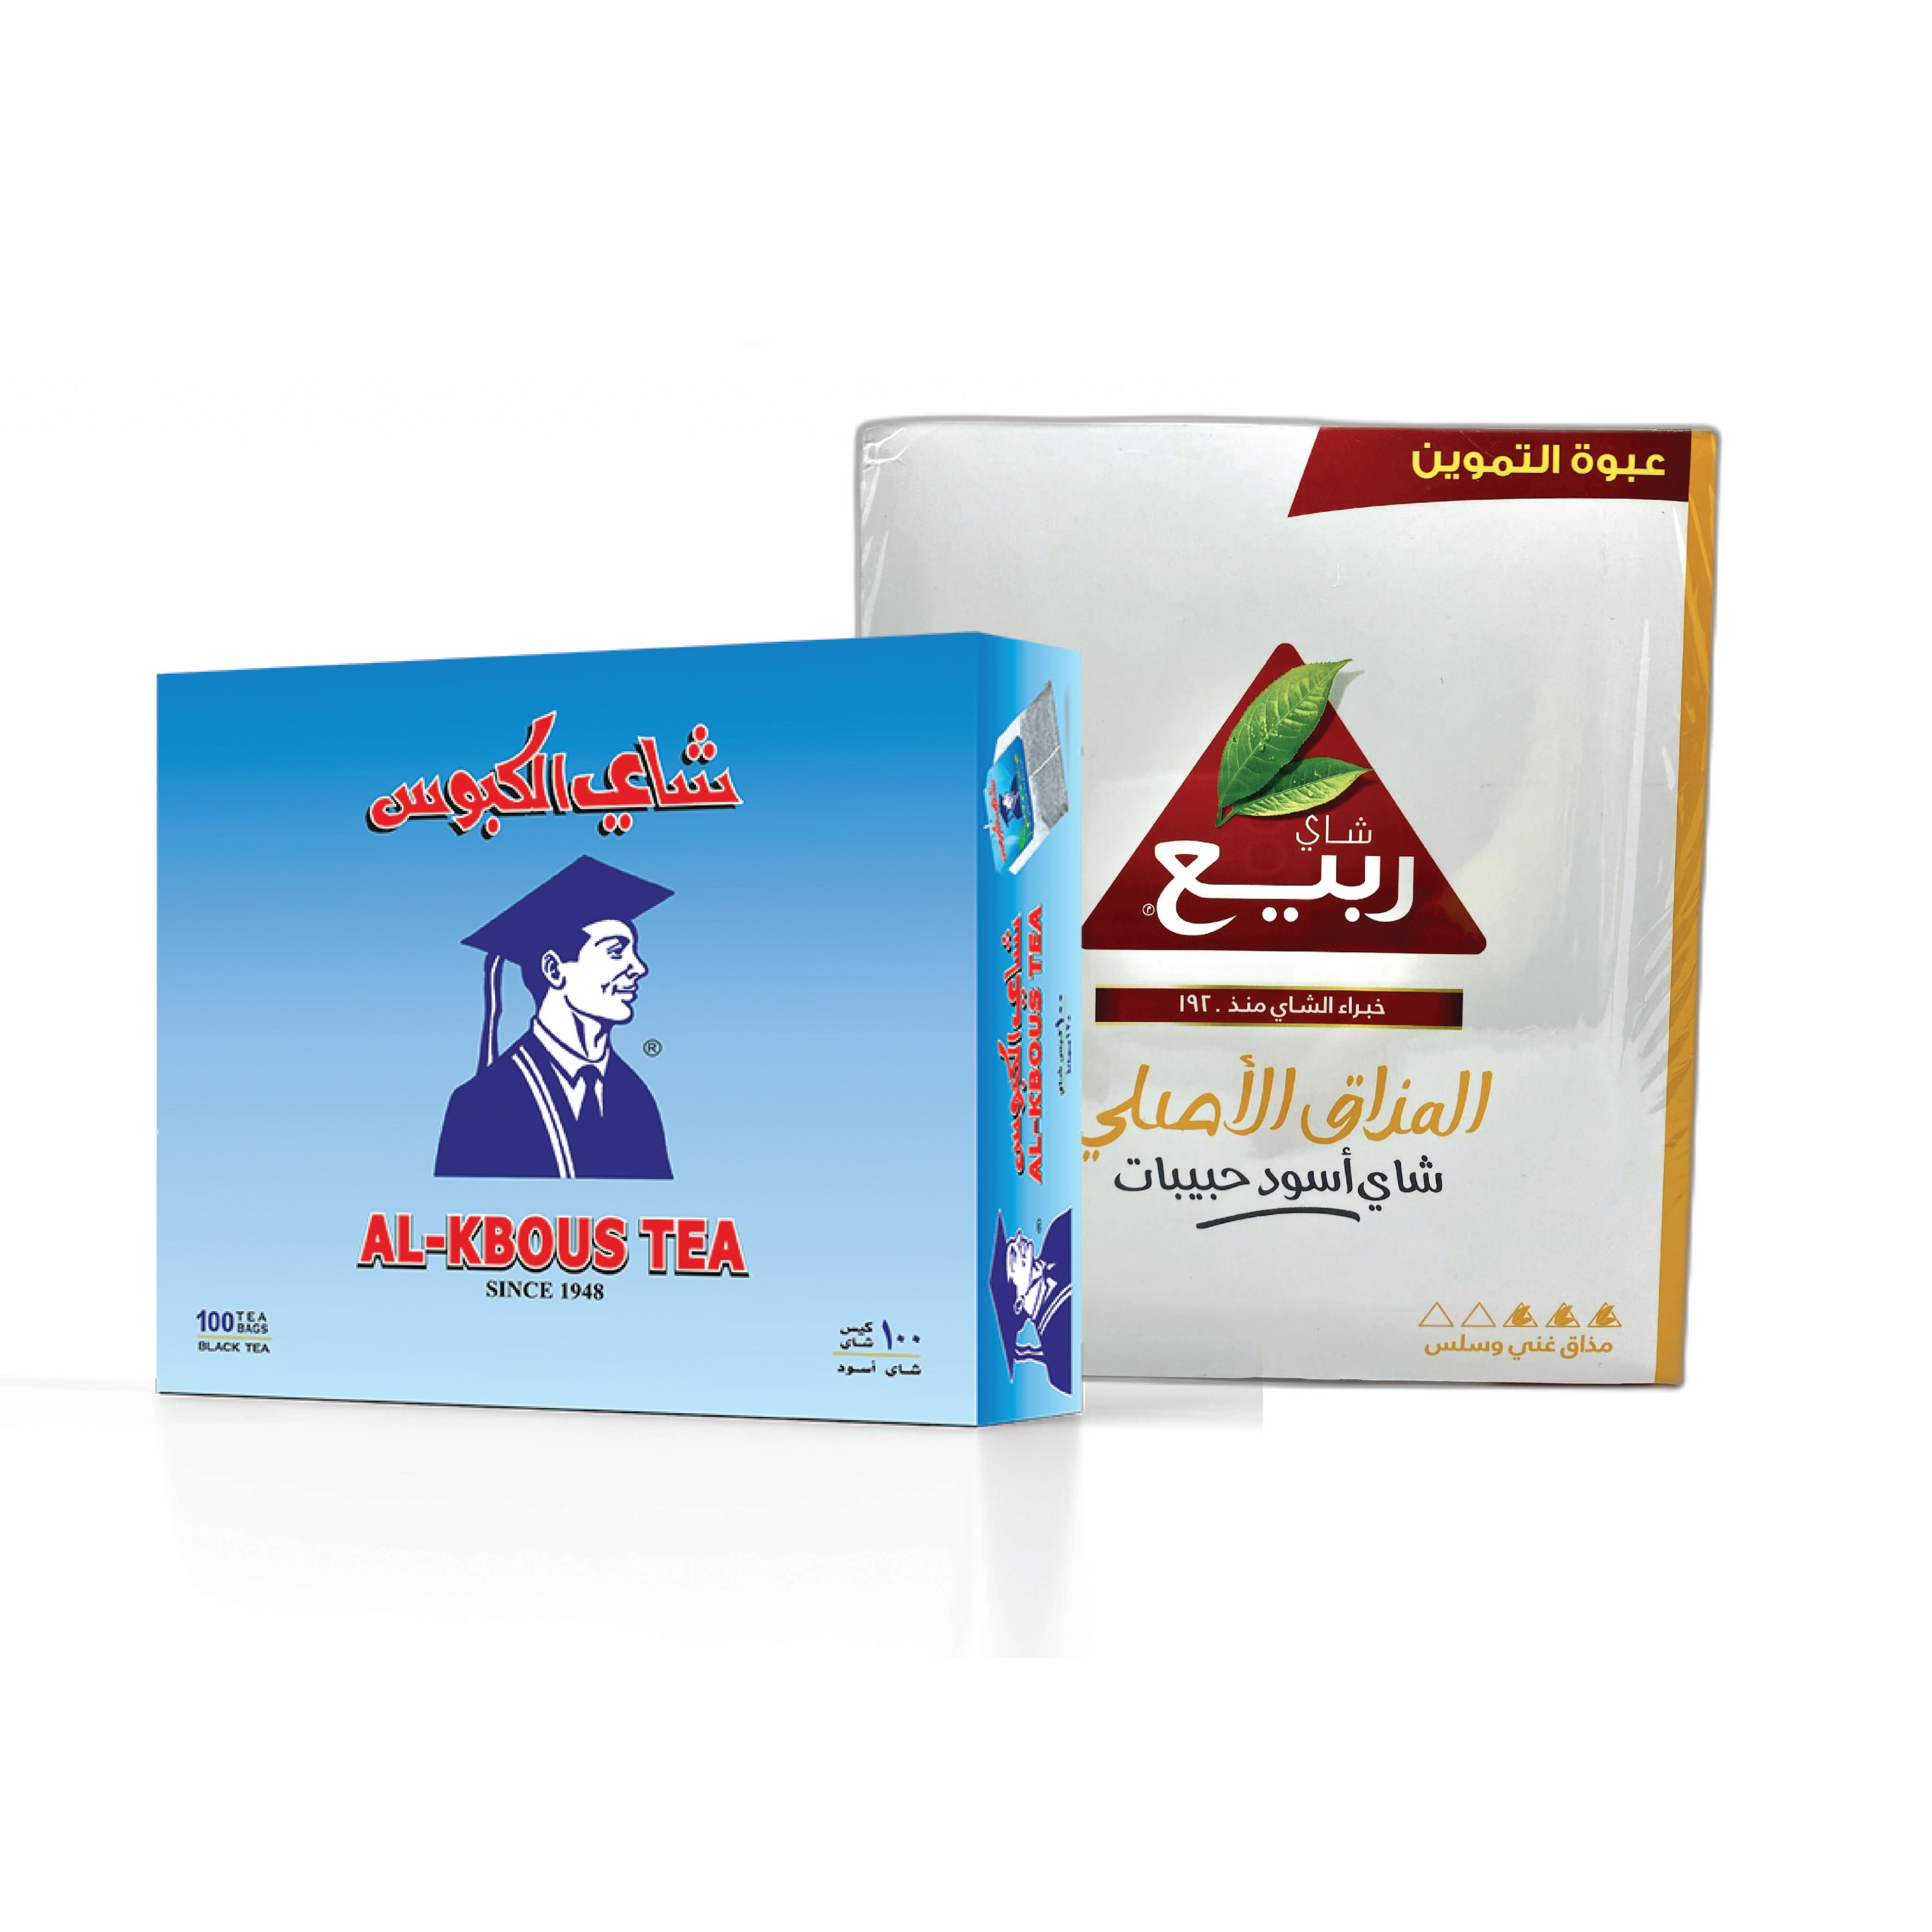 AL-KBOUS TEA RABEA TEA DUAL CUP TEA BAG CAMPAIGN PACKAGE